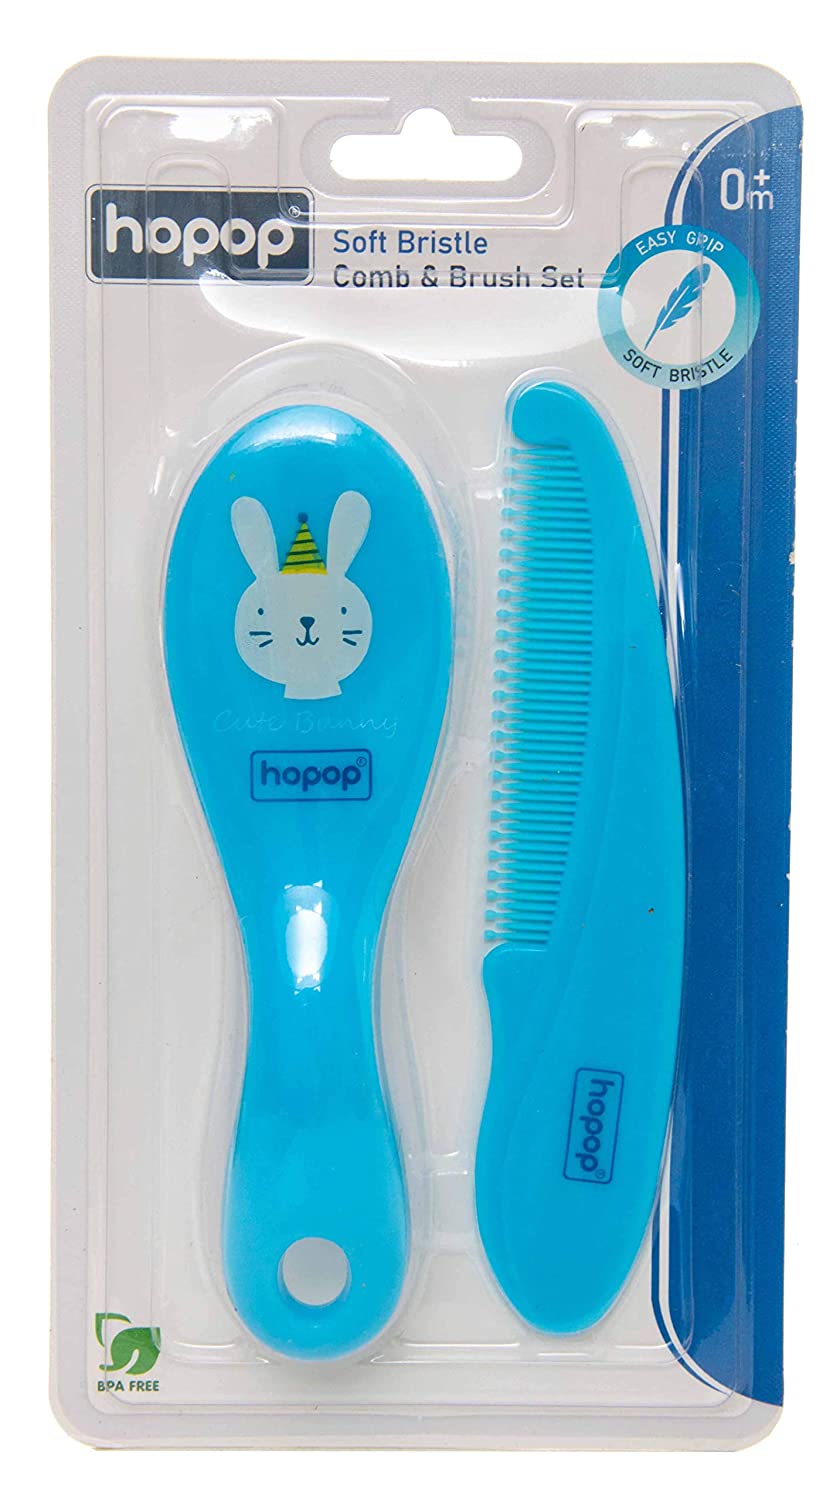 HOPOP Soft Bristle Comb & Brush Set For Babies - Blue 0m+